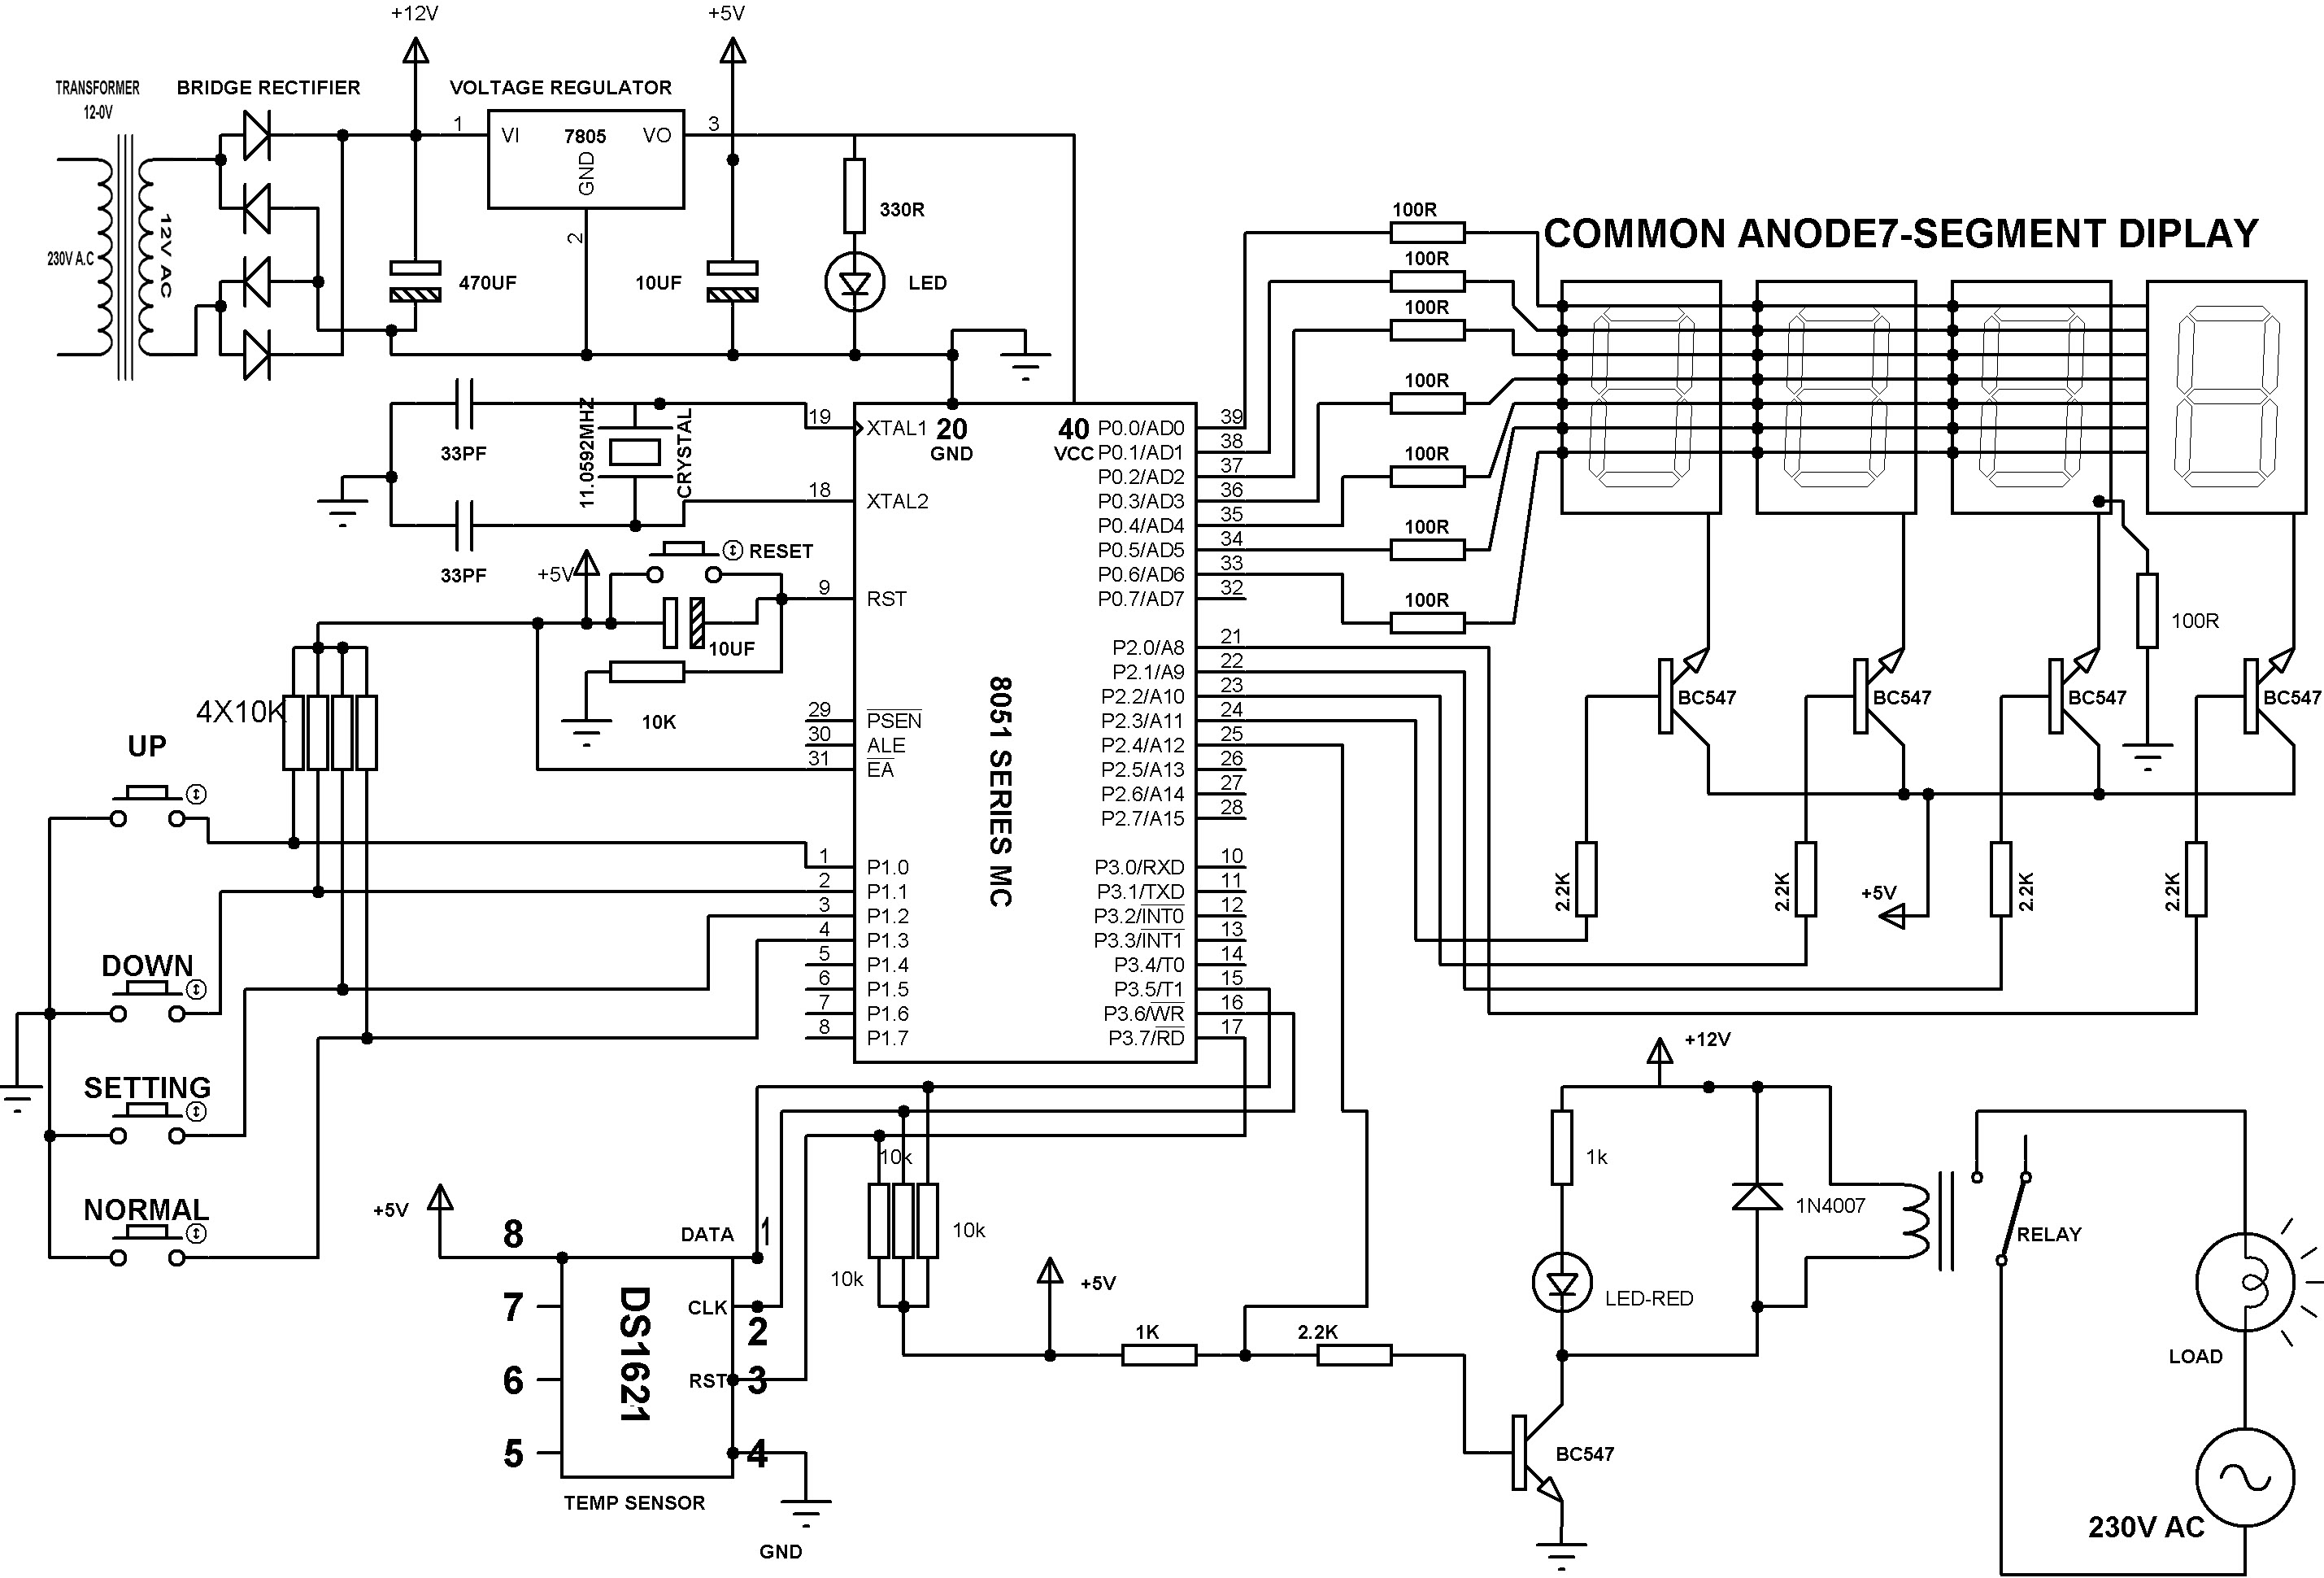 Diagrama esquemático del controlador de temperatura digital